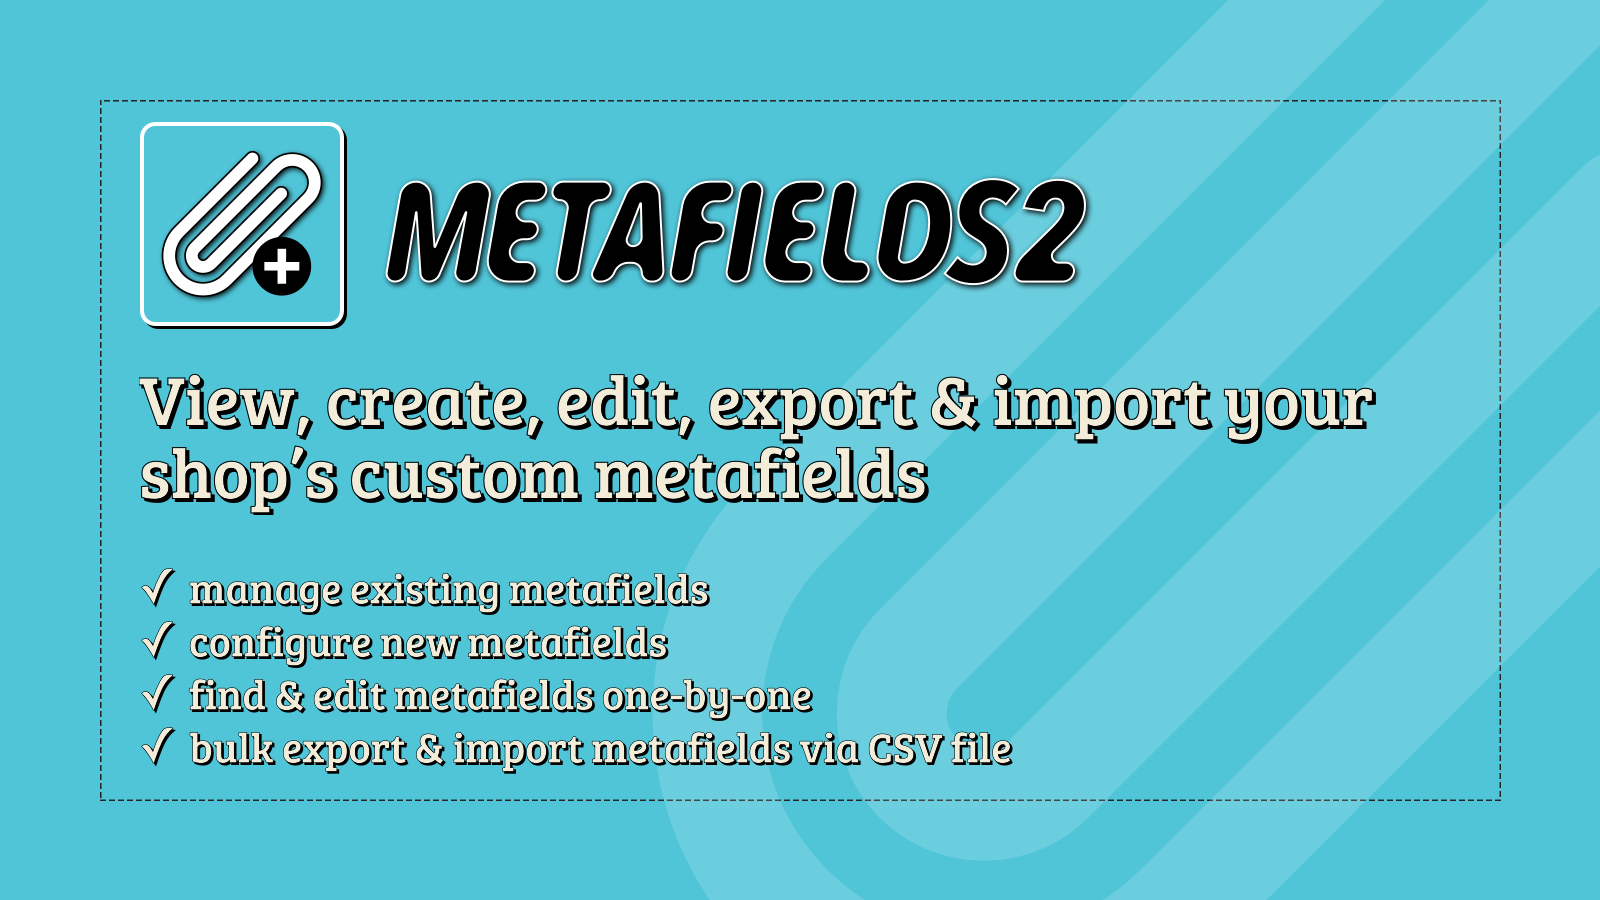 Metafields2 - Créer, modifier, exporter/importer vos metafields personnalisés